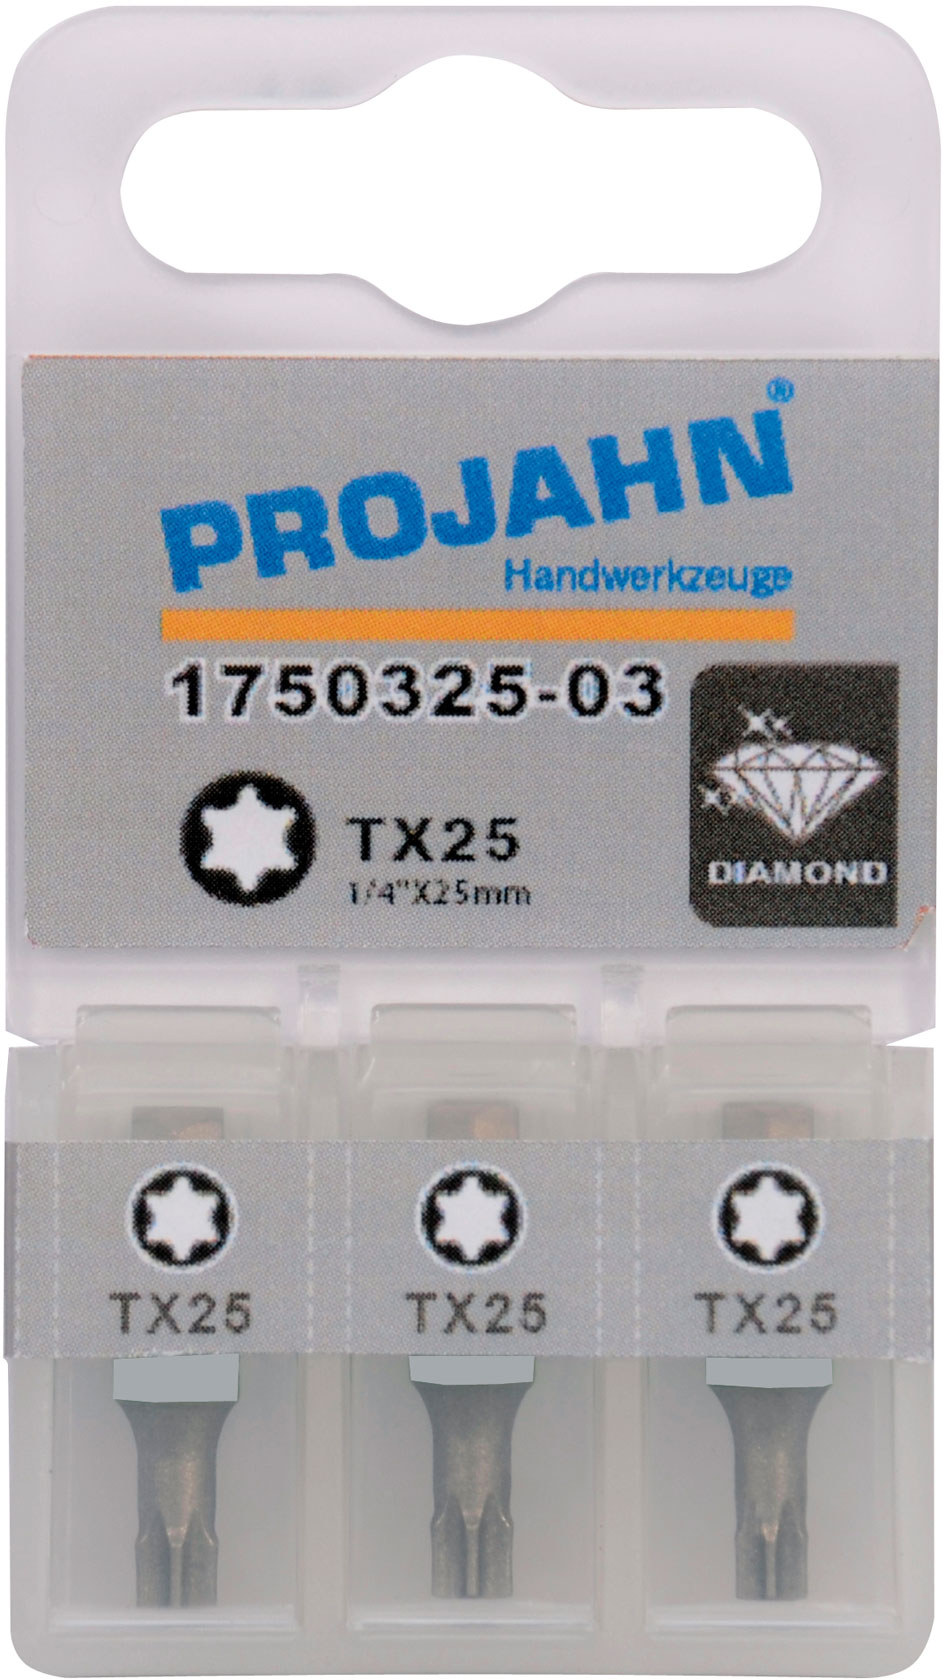 10x Profi Bit TX40W für Innen TX Schrauben TORX® konisch 6kant Projahn 3040-10 